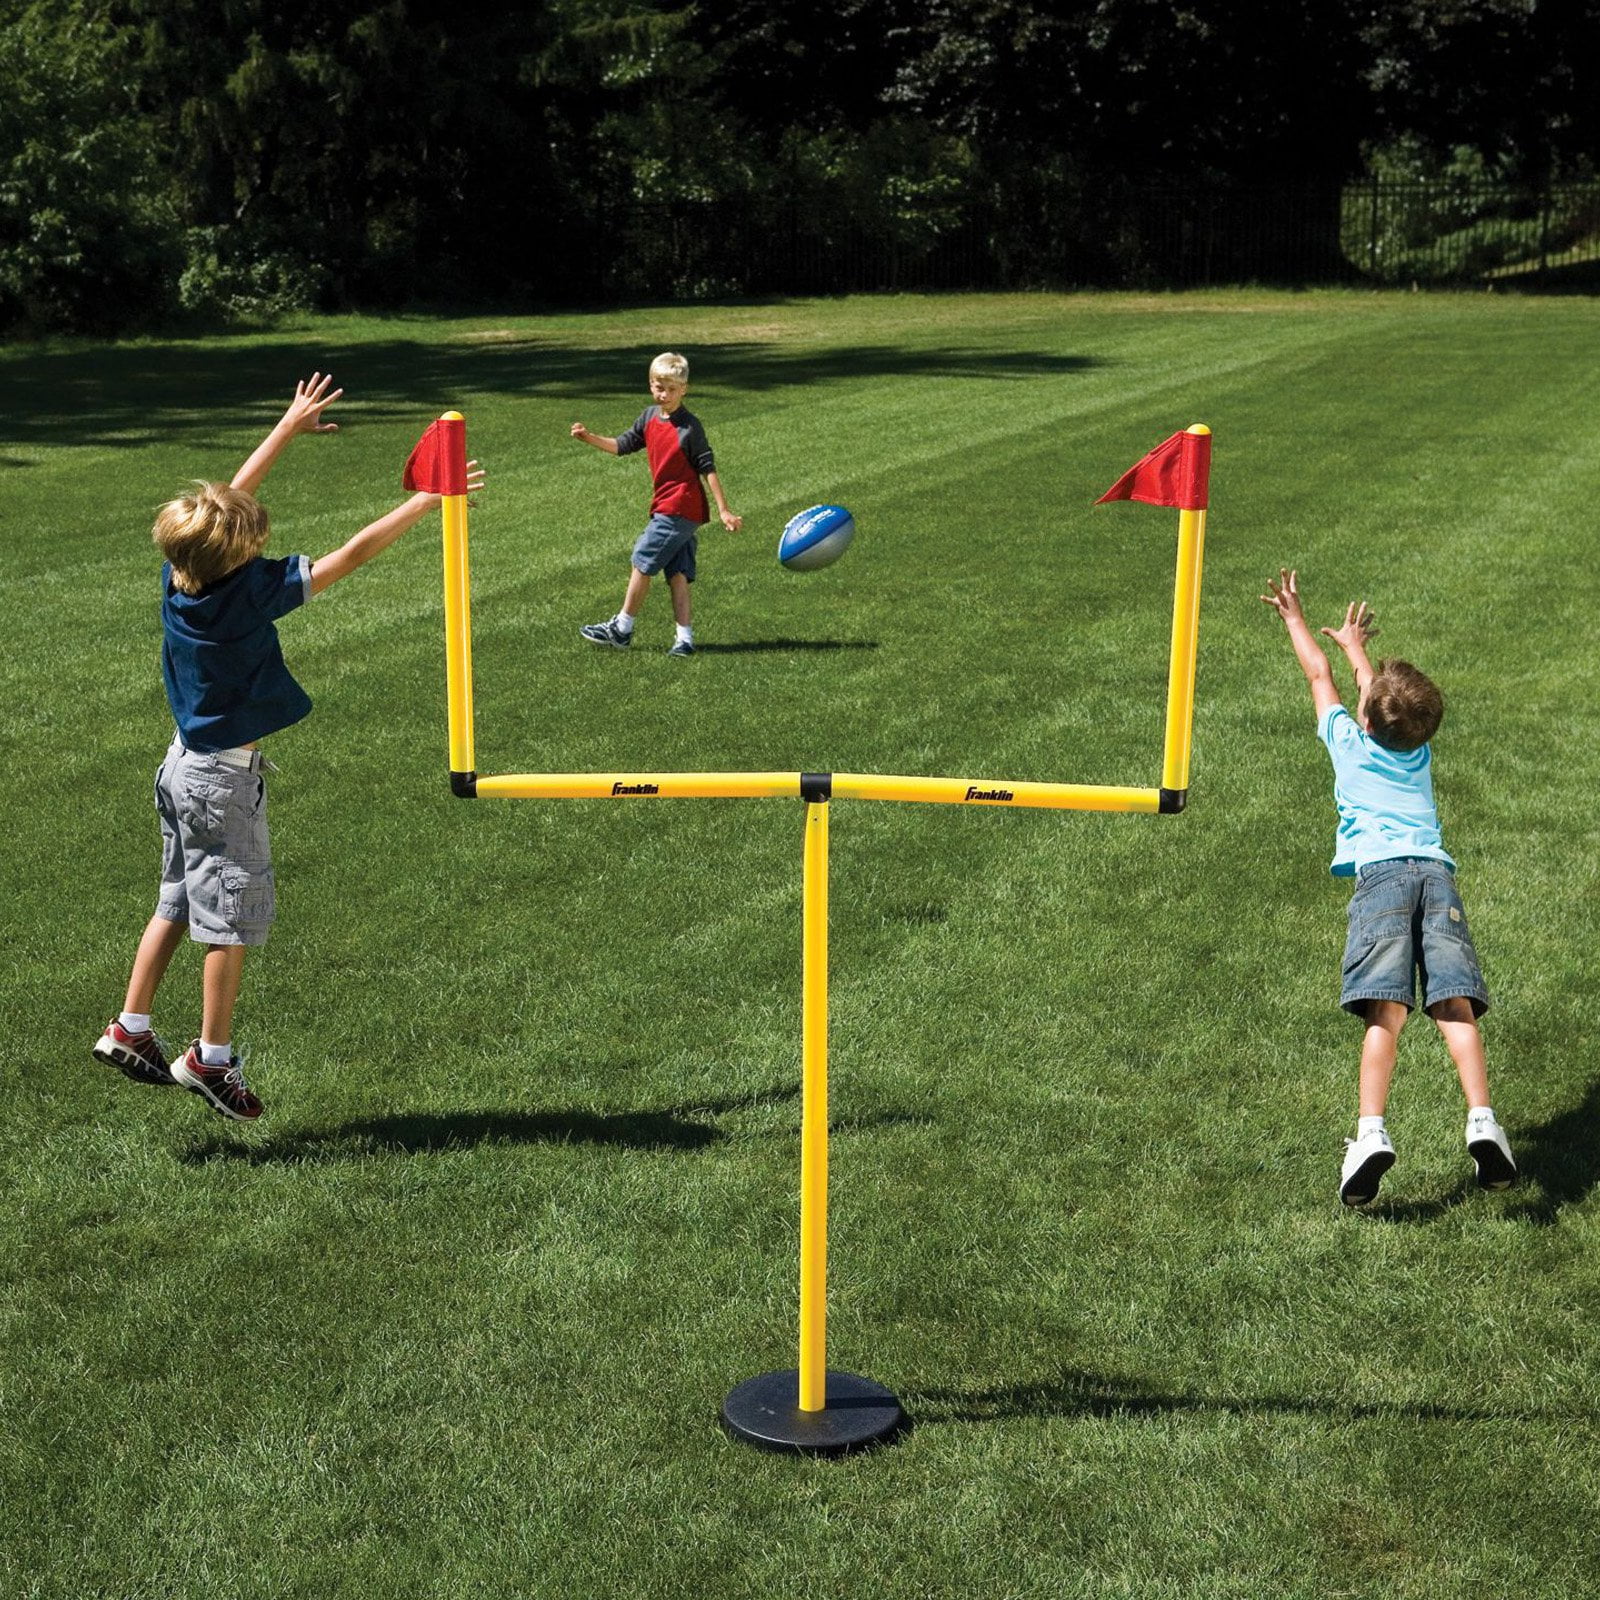 Franklin Sports Kids Football Field Goal Goalpost Set with Mini